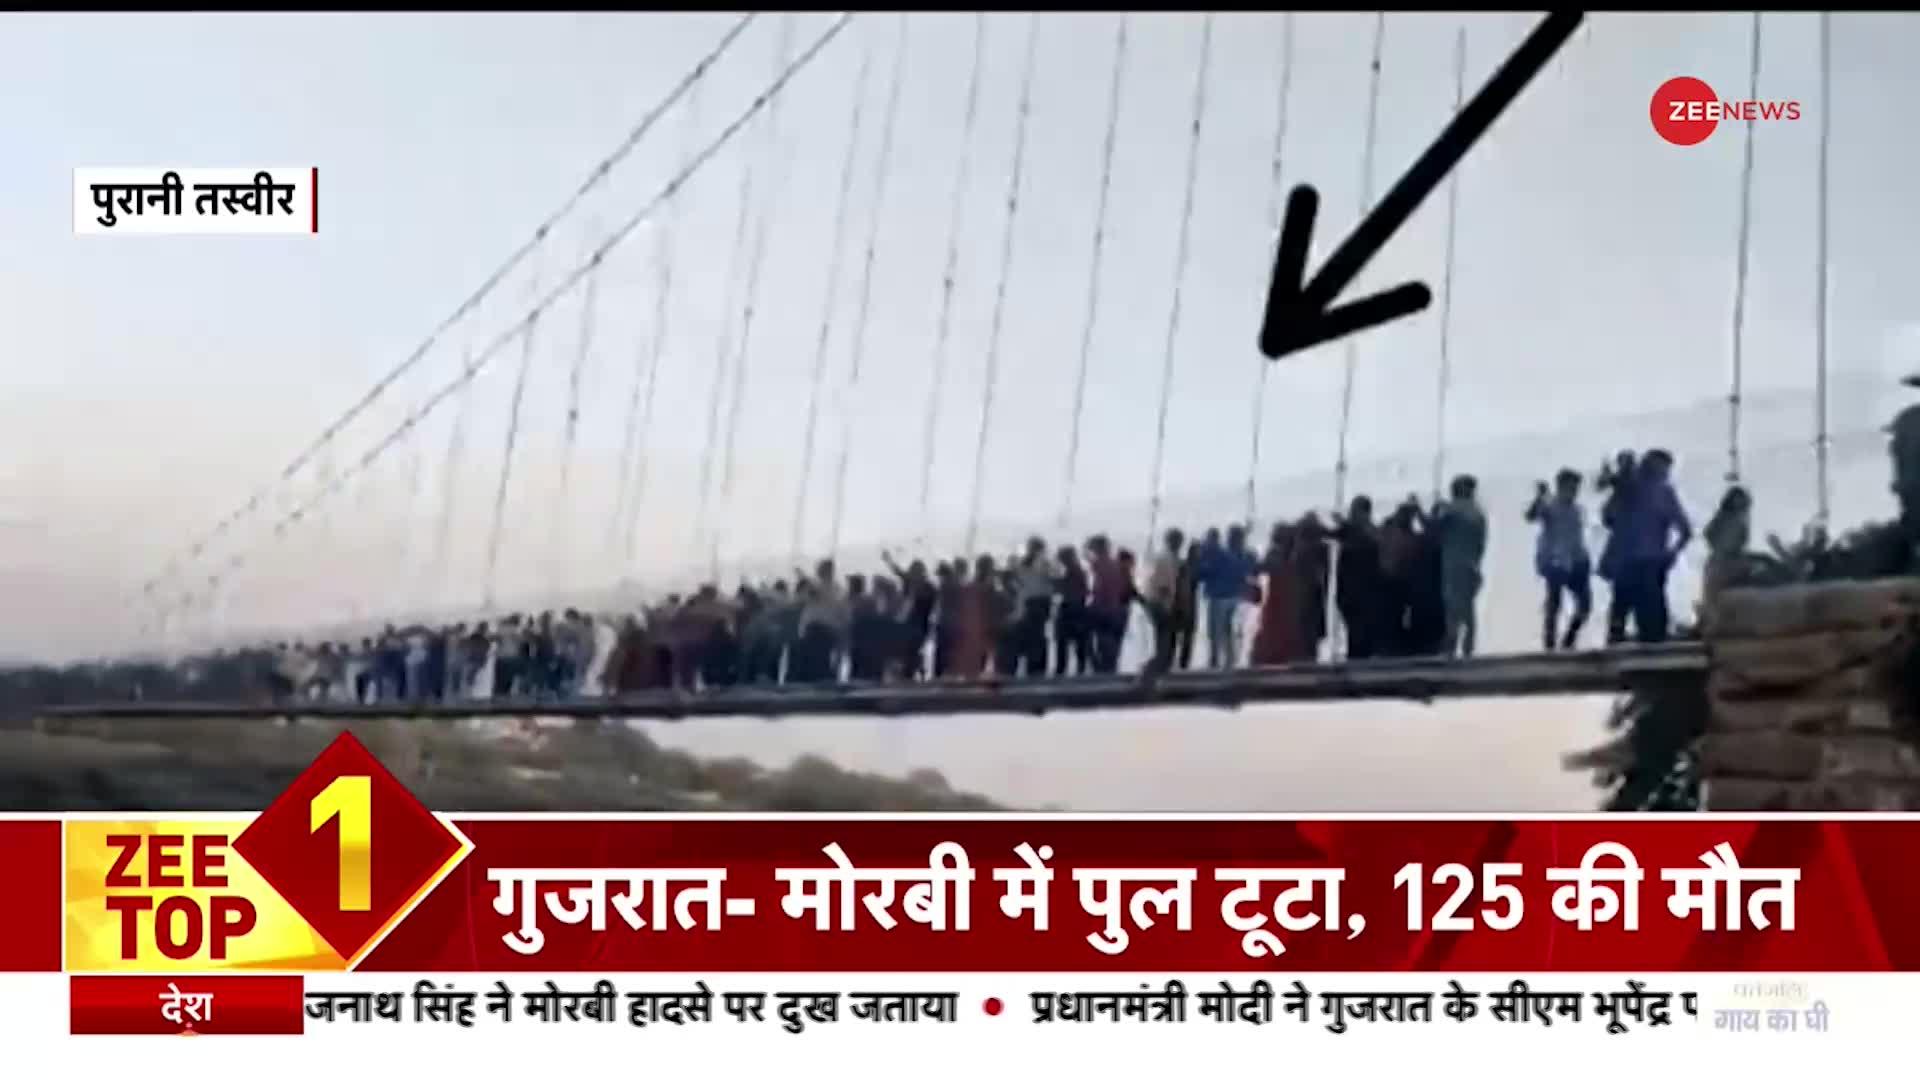 Zee Top 10: गुजरात- मोरबी में पुल टूटा, 125 की मौत